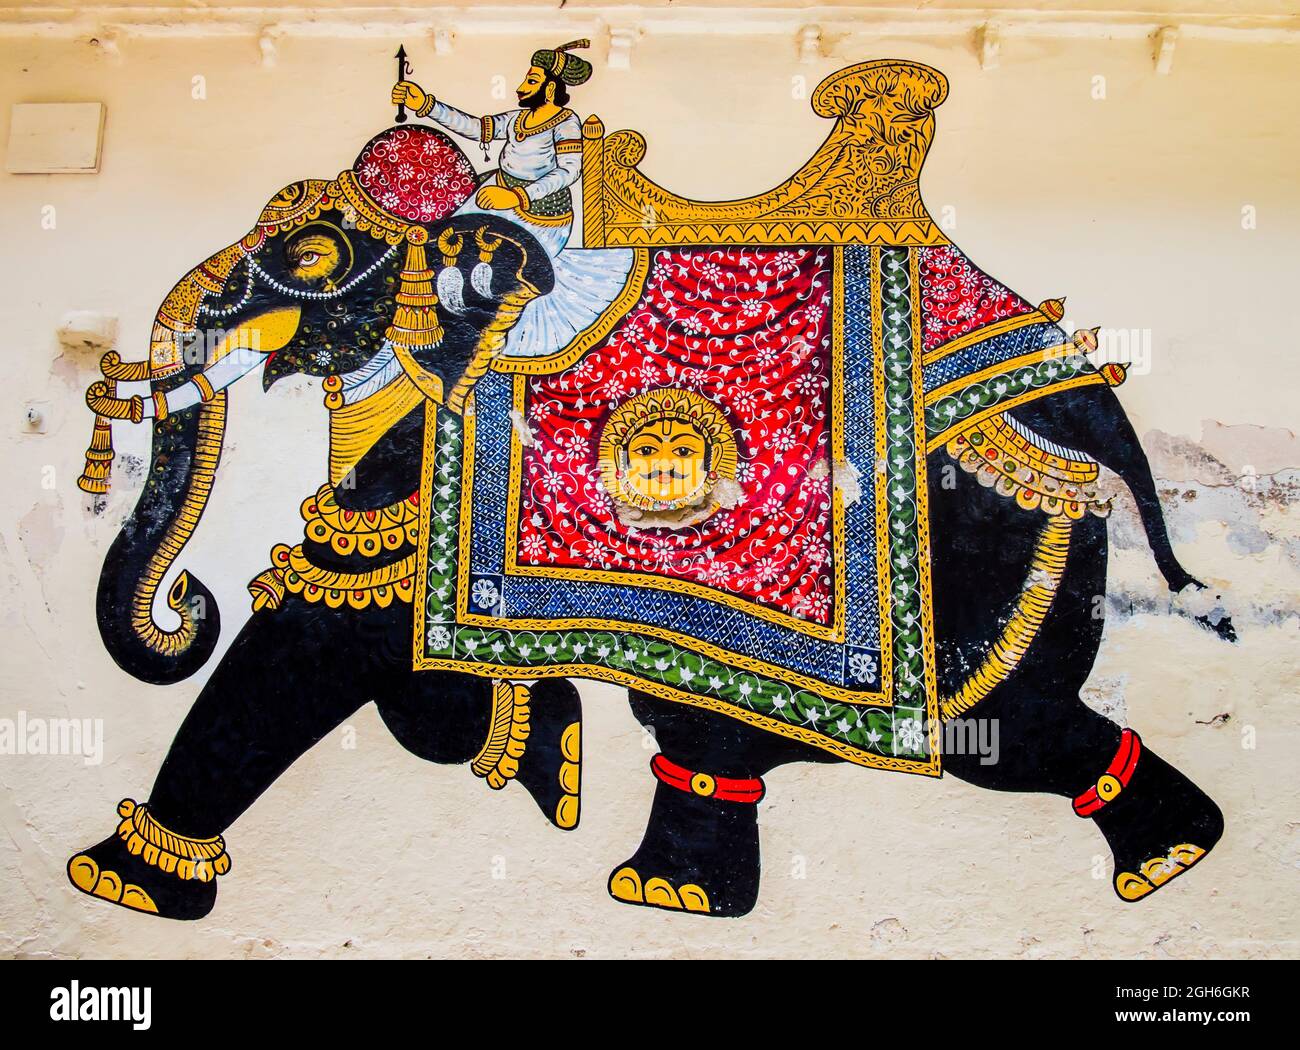 Splendido affresco con elefante finemente decorato con tradizionali ornamenti e tessuti indiani, City Palace, Udaipur, Rajasthan, India Foto Stock